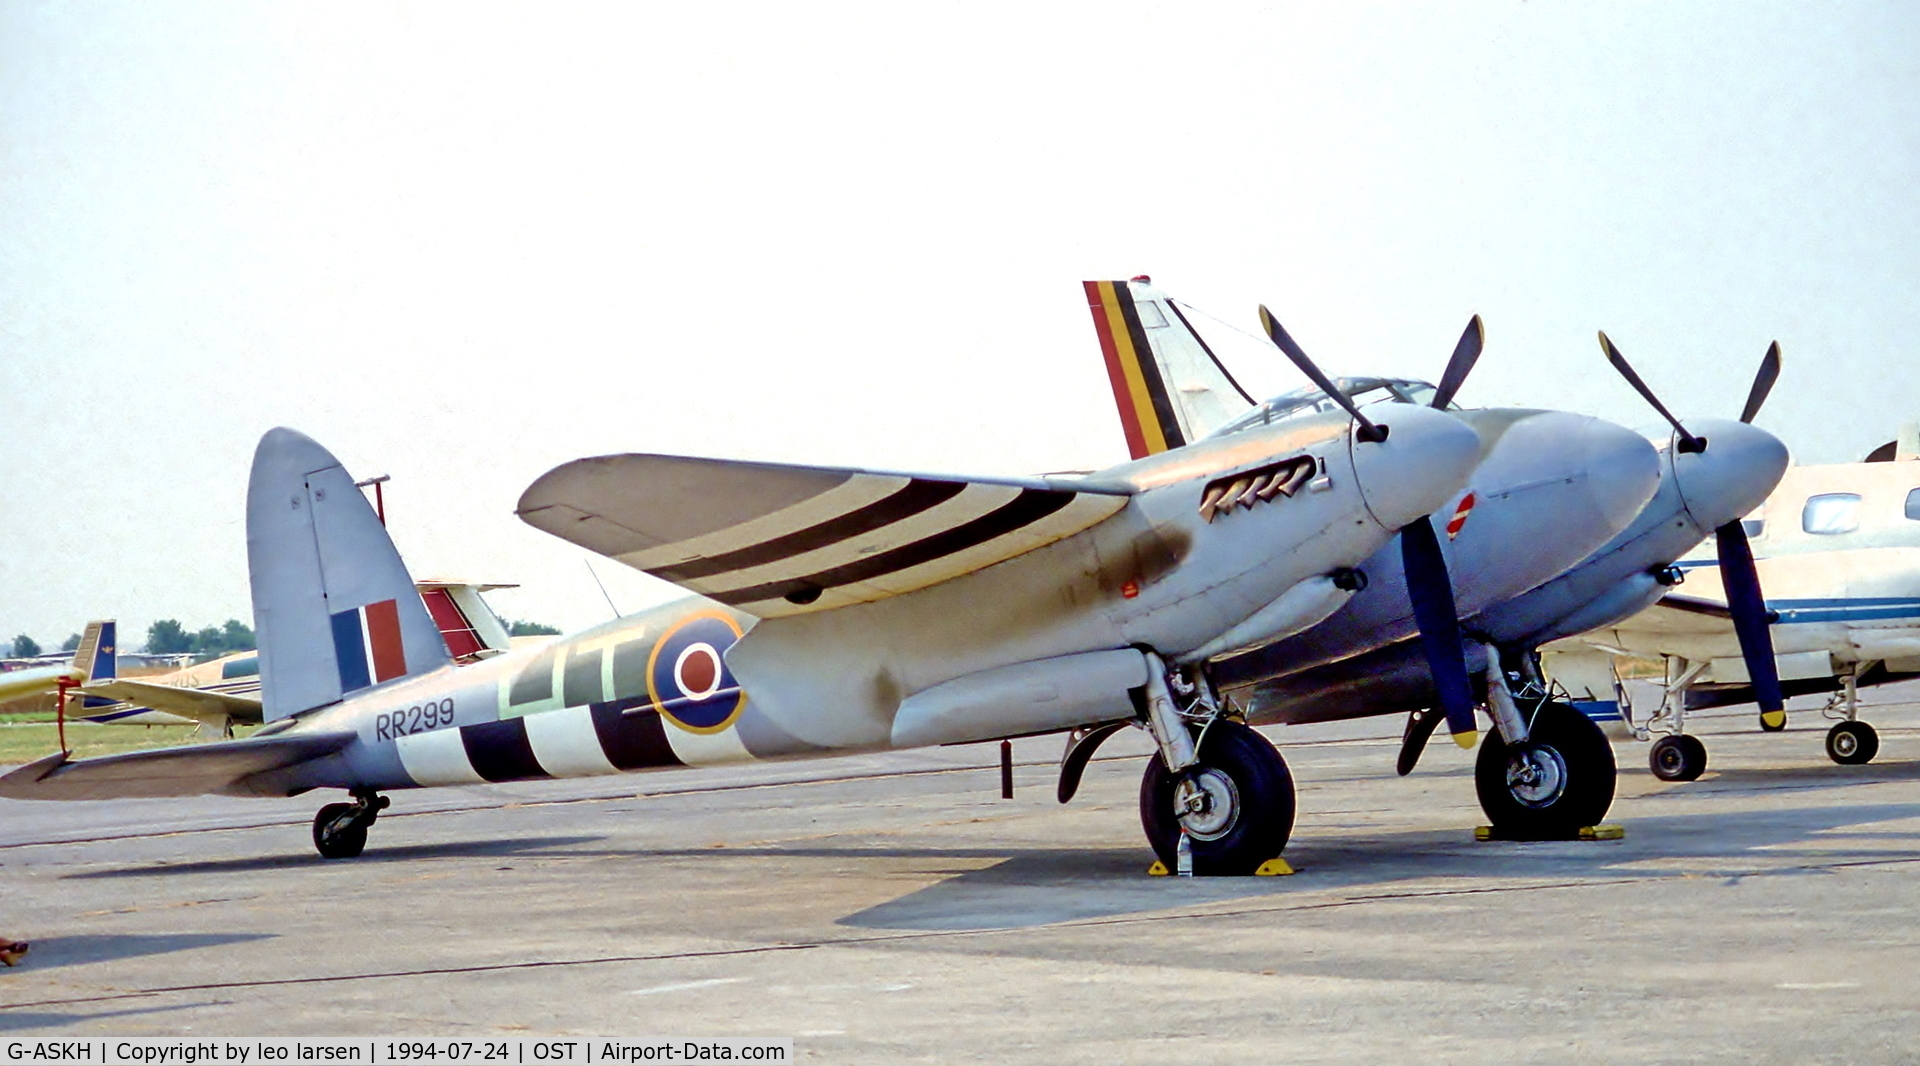 G-ASKH, 1965 De Havilland DH98 Mosquito T.3 C/N RR299, Ostende Air Show 24.7.1994